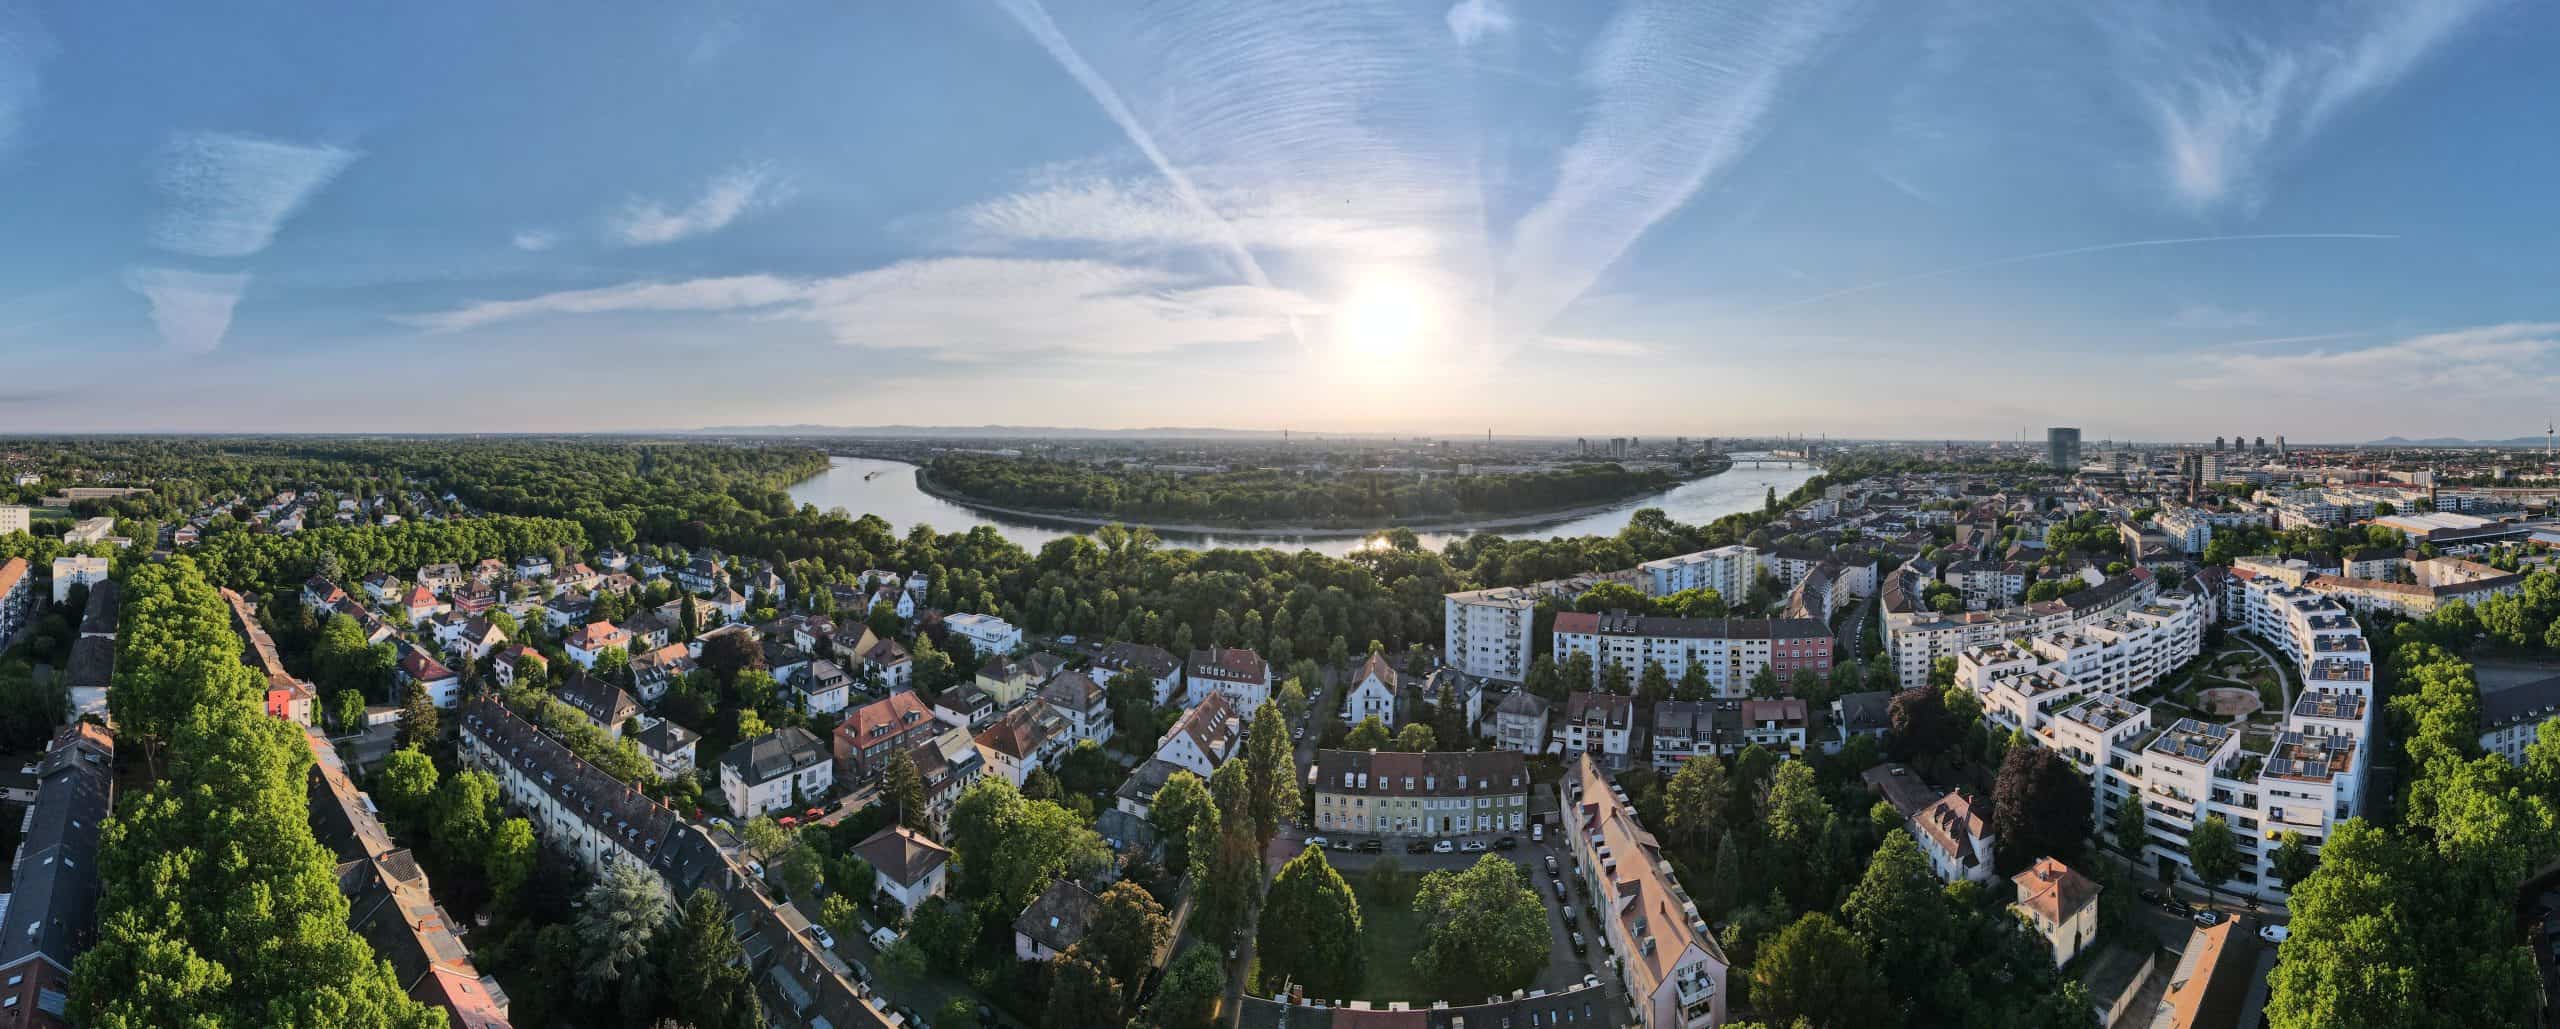 Immobilieninvestor kauft Büroimmobilie Honeycamp in Mannheim